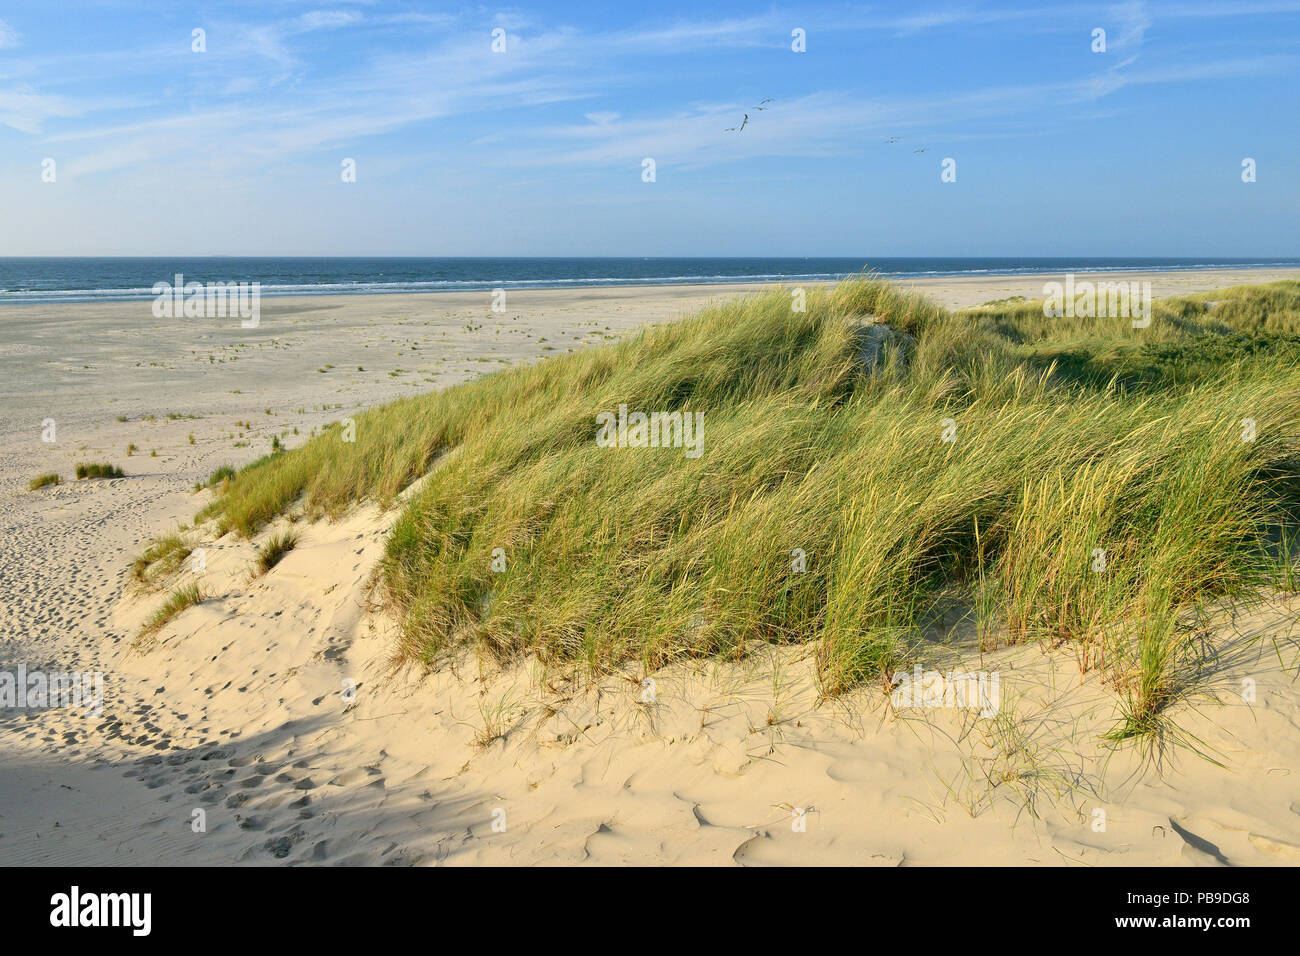 Bordo erboso dune di spiaggia e mare del Nord nella distanza, Juist, Ostfriesische Insel, Frisia orientale, Bassa Sassonia, Germania Foto Stock